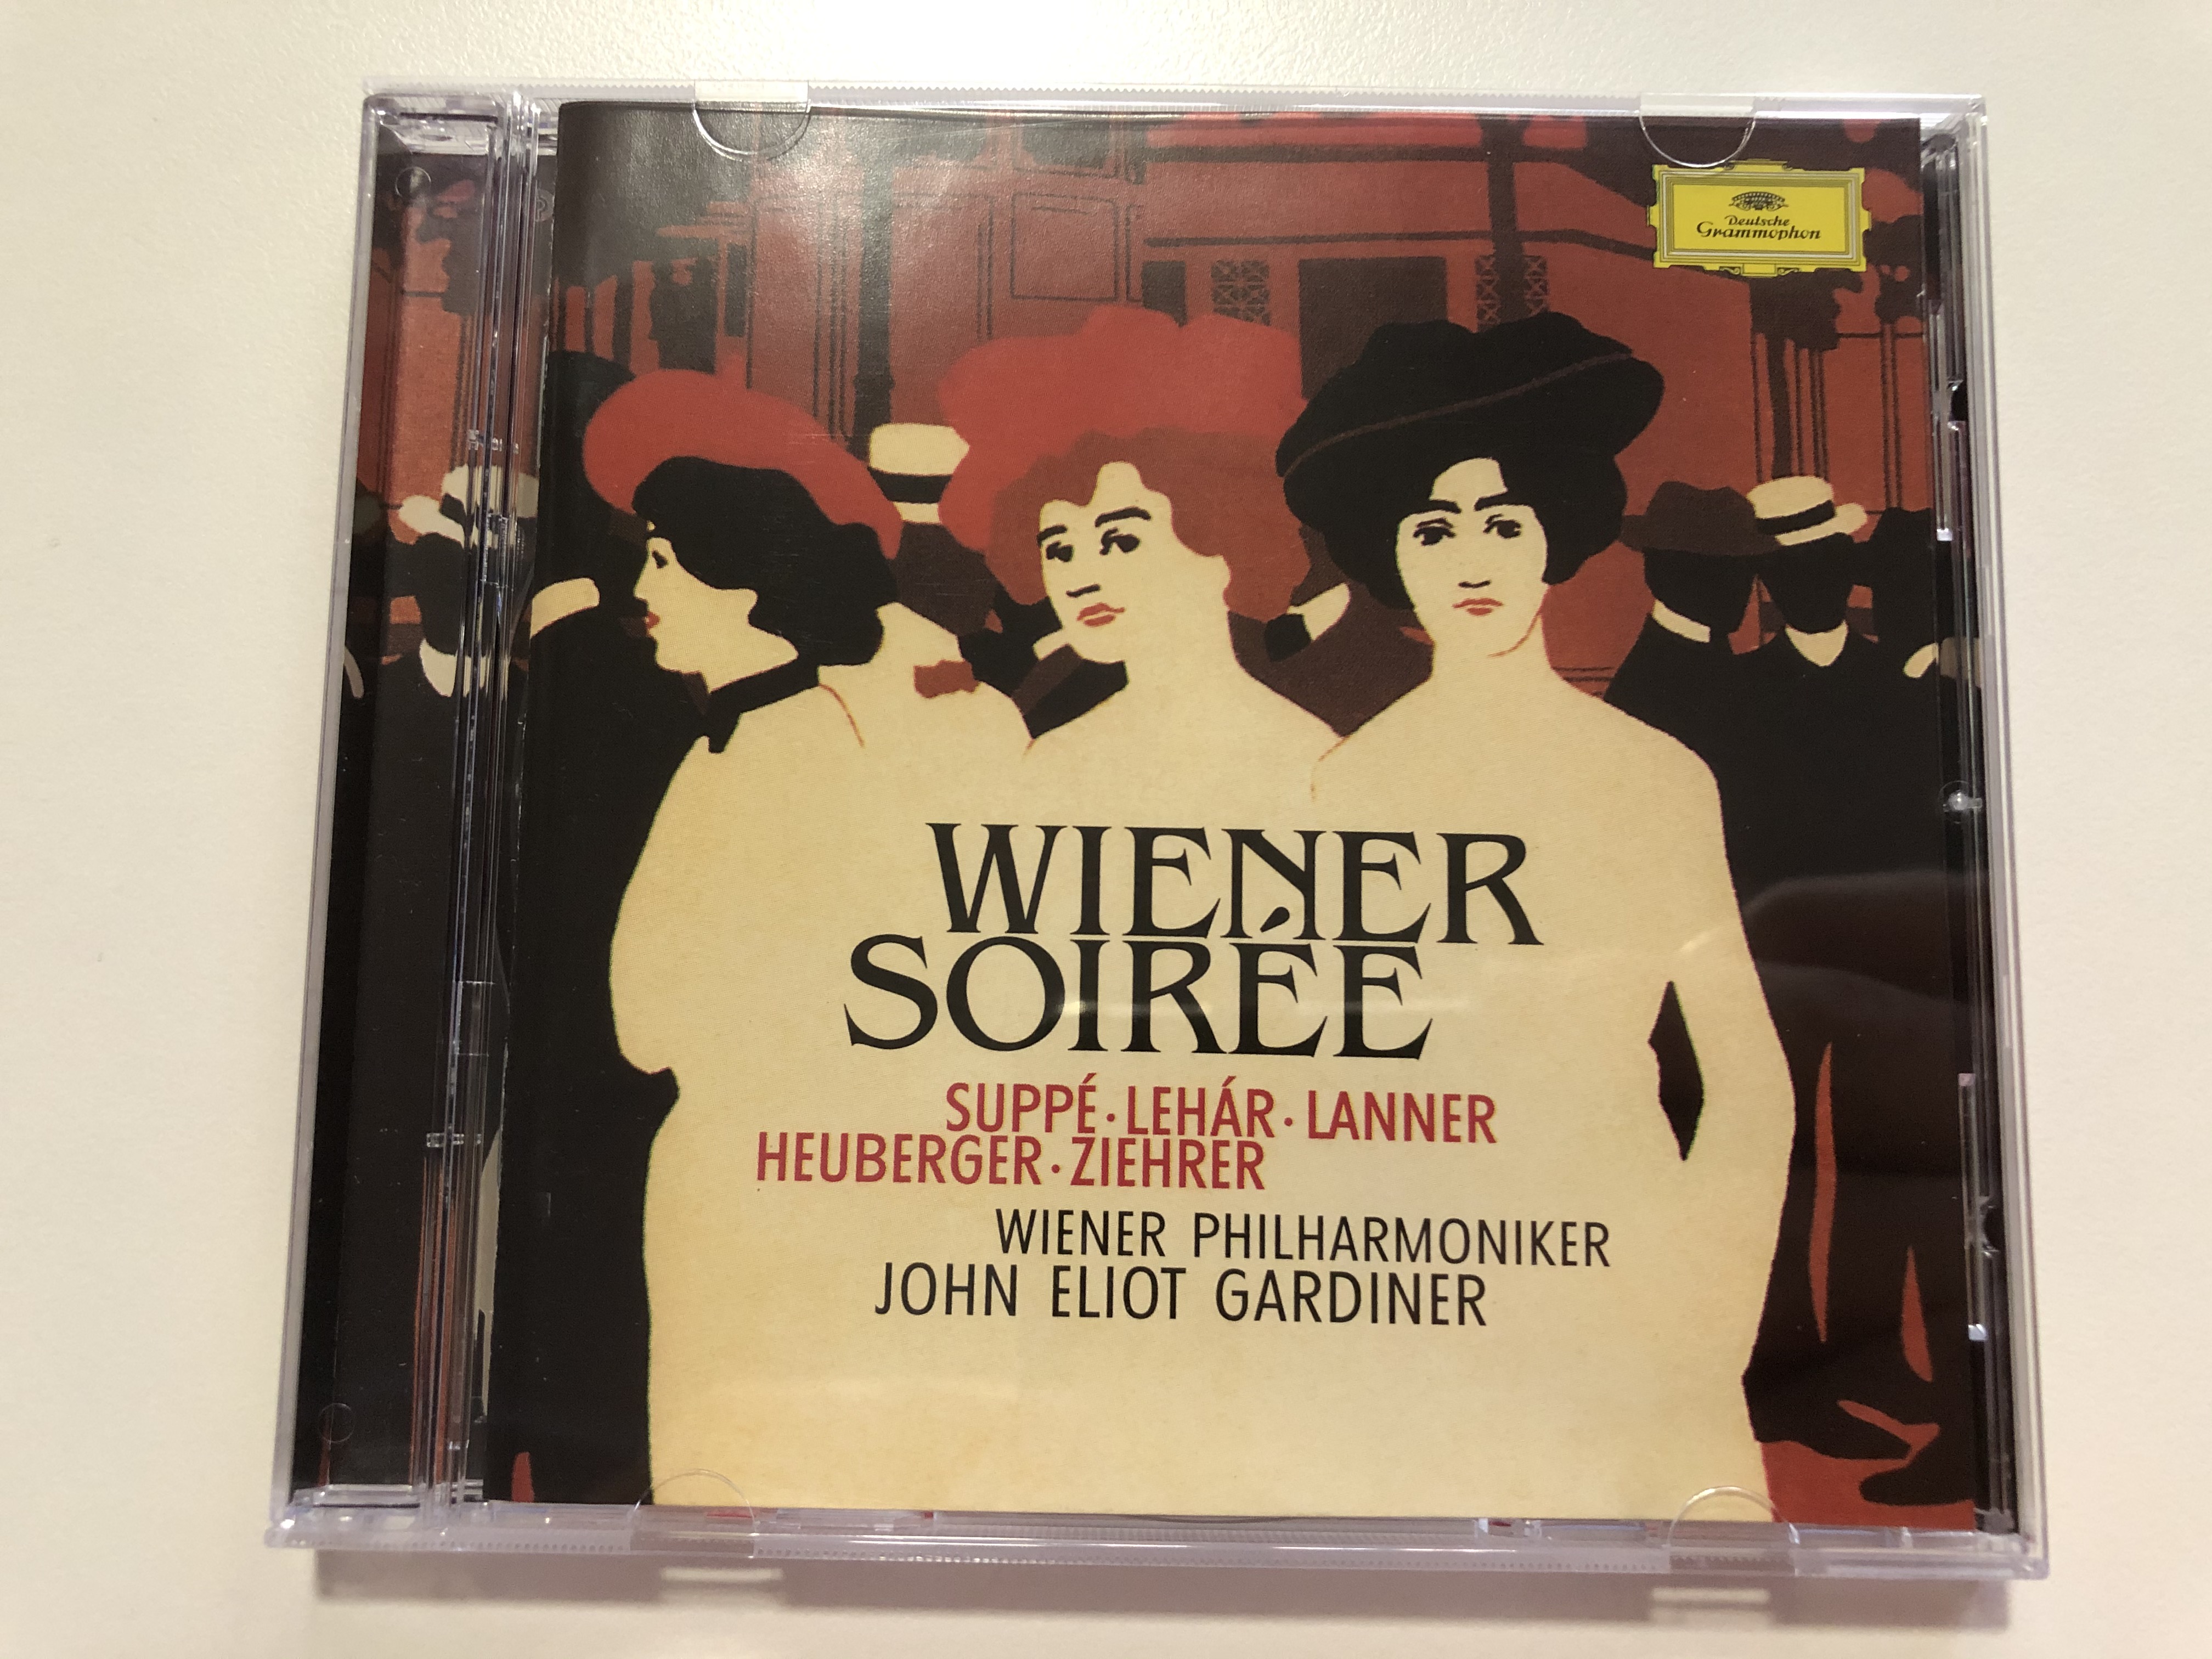 wiener-soir-e-suppe-lehar-lanner-heuberger-ziehrer-wiener-philharmoniker-john-eliot-gardiner-deutsche-grammophon-audio-cd-1999-stereo-463-185-2-1-.jpg